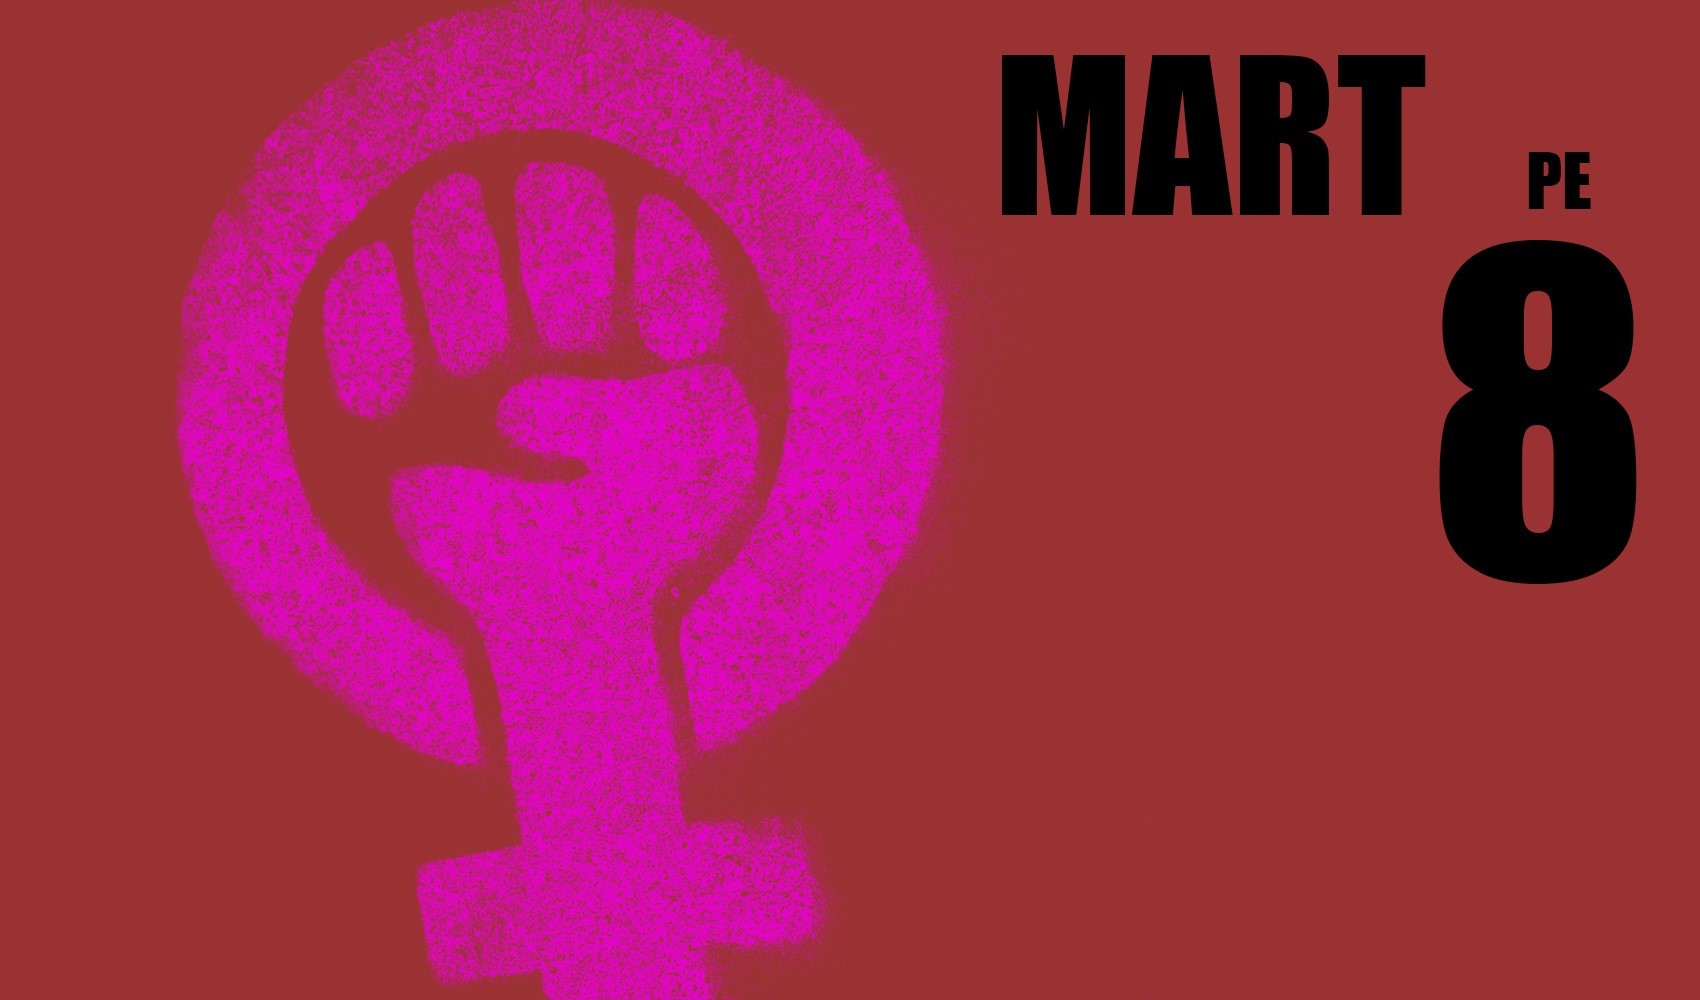 8 Mart Dünya Kadınlar Günü: Tarihte bugün neler oldu?